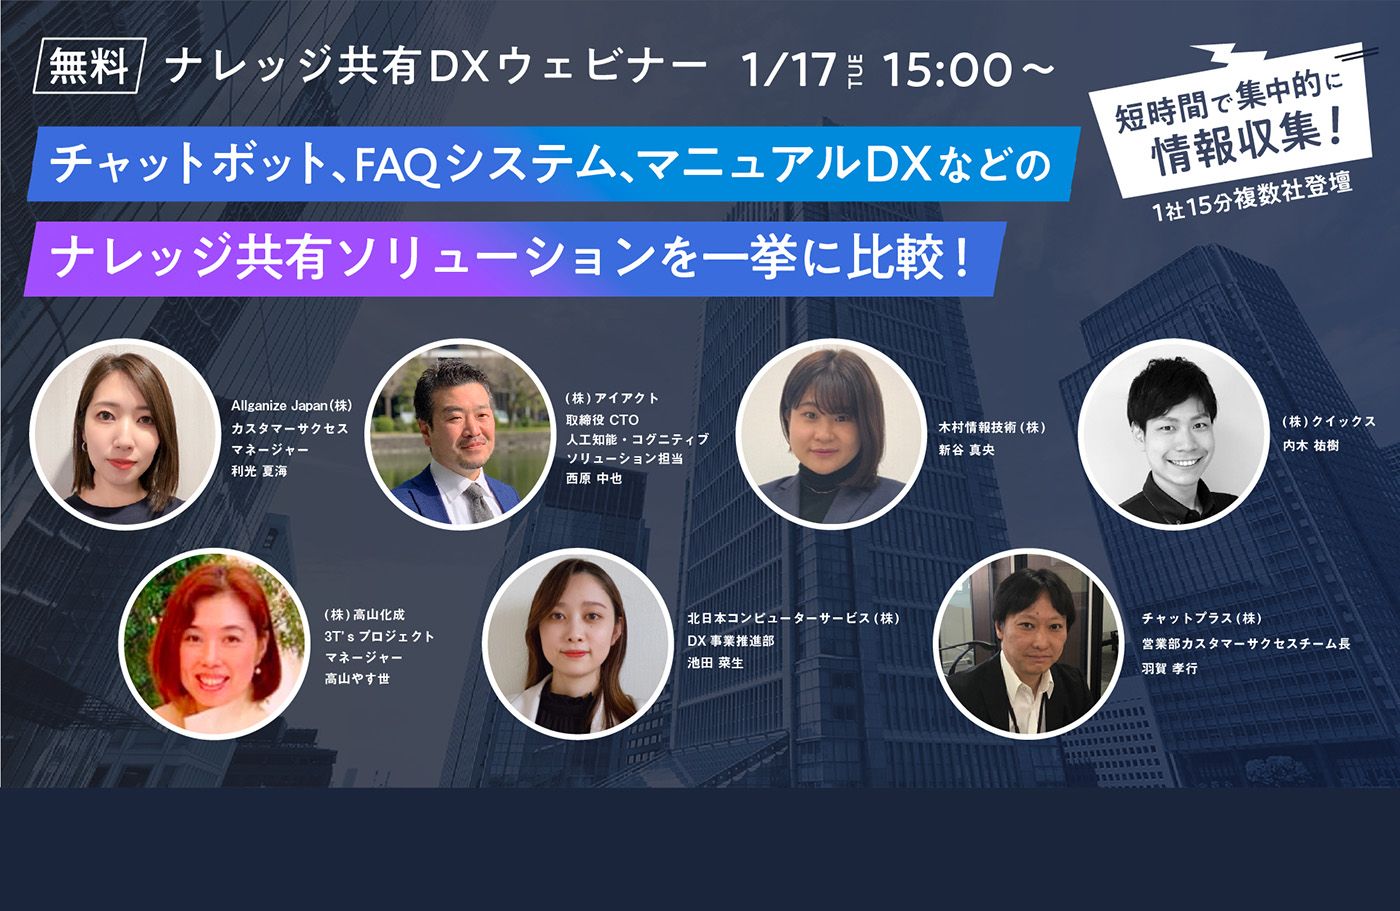 ■イベント告知■DX EXPO オンライン「ナレッジ共有DXウェビナー」に登壇します！（1月17, 31日, 2月28日）